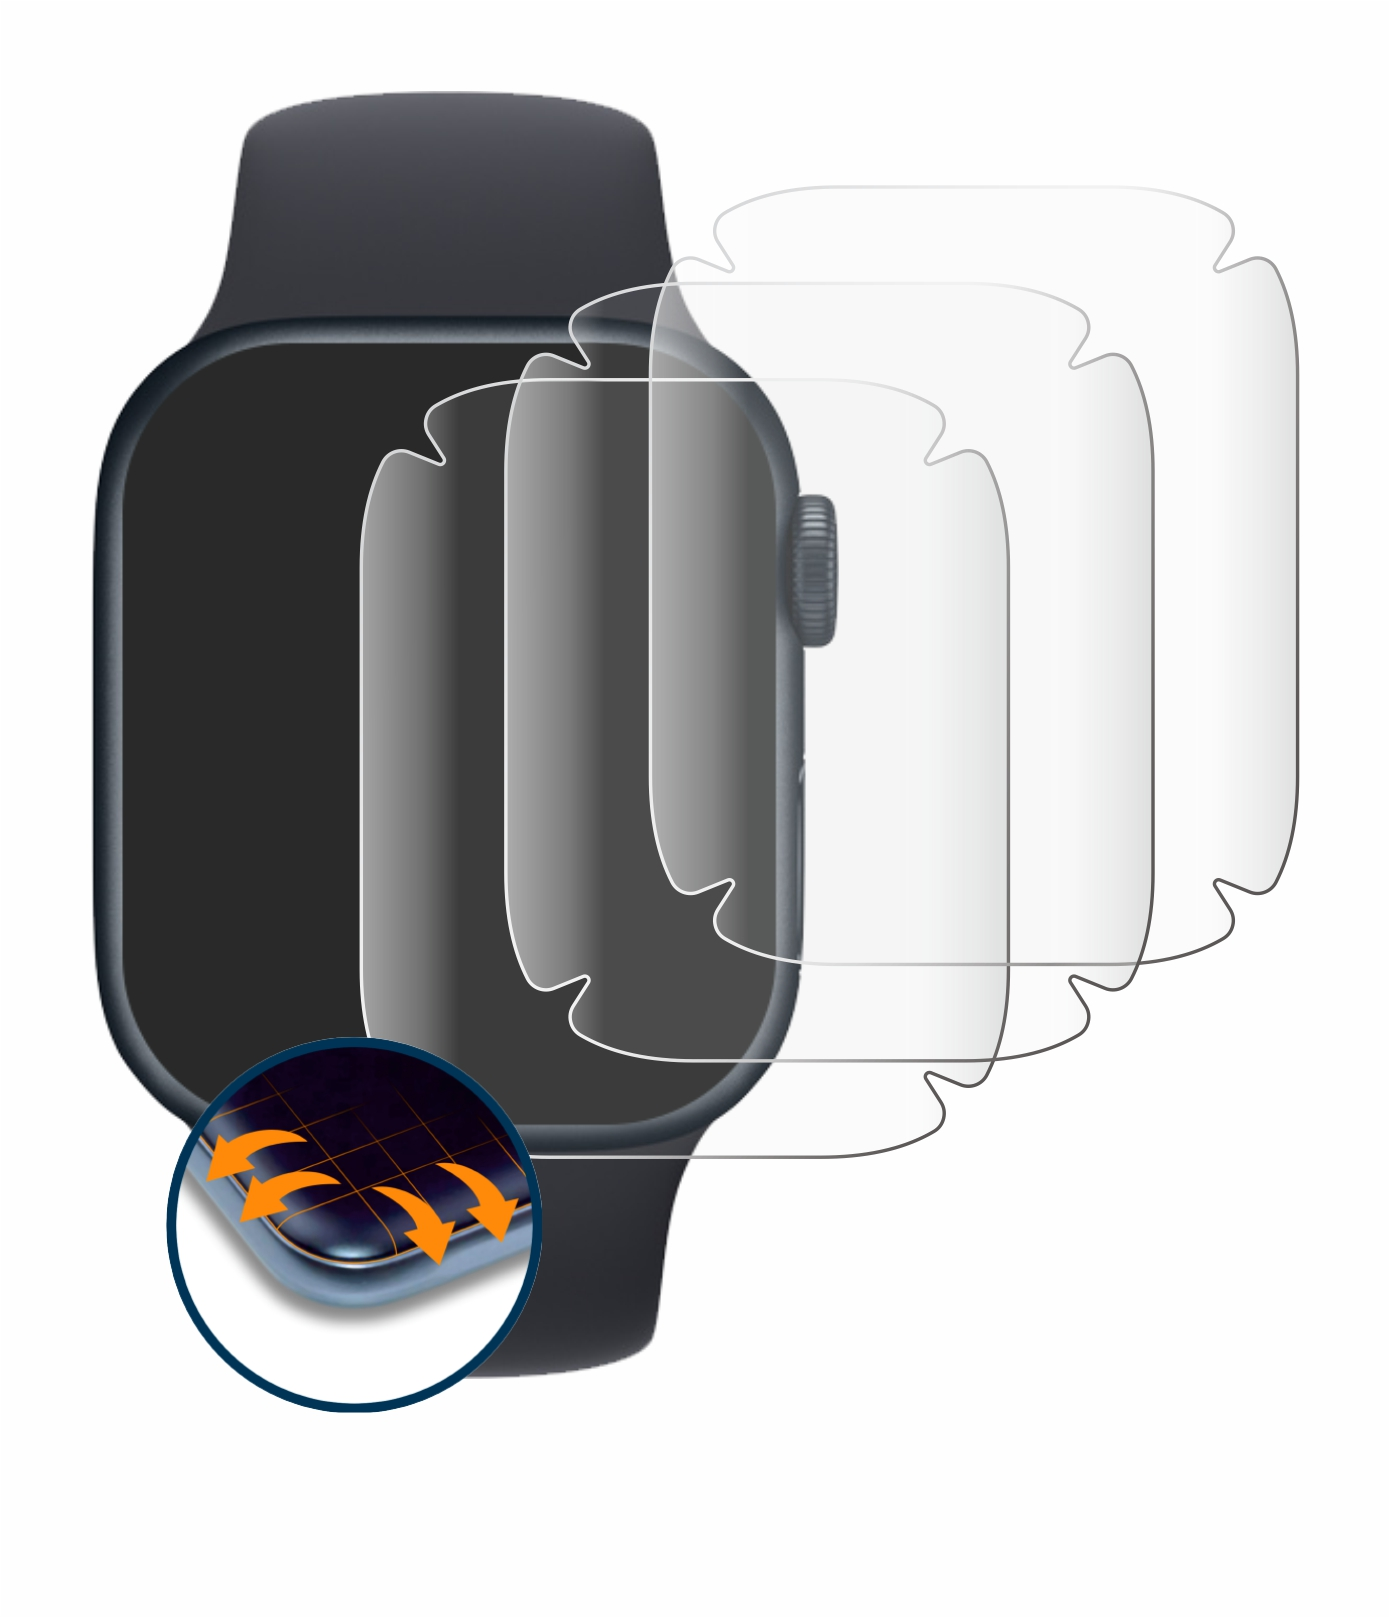 Full-Cover Watch (41 Series 3D Curved Schutzfolie(für SAVVIES Flex Apple 4x 8 mm))